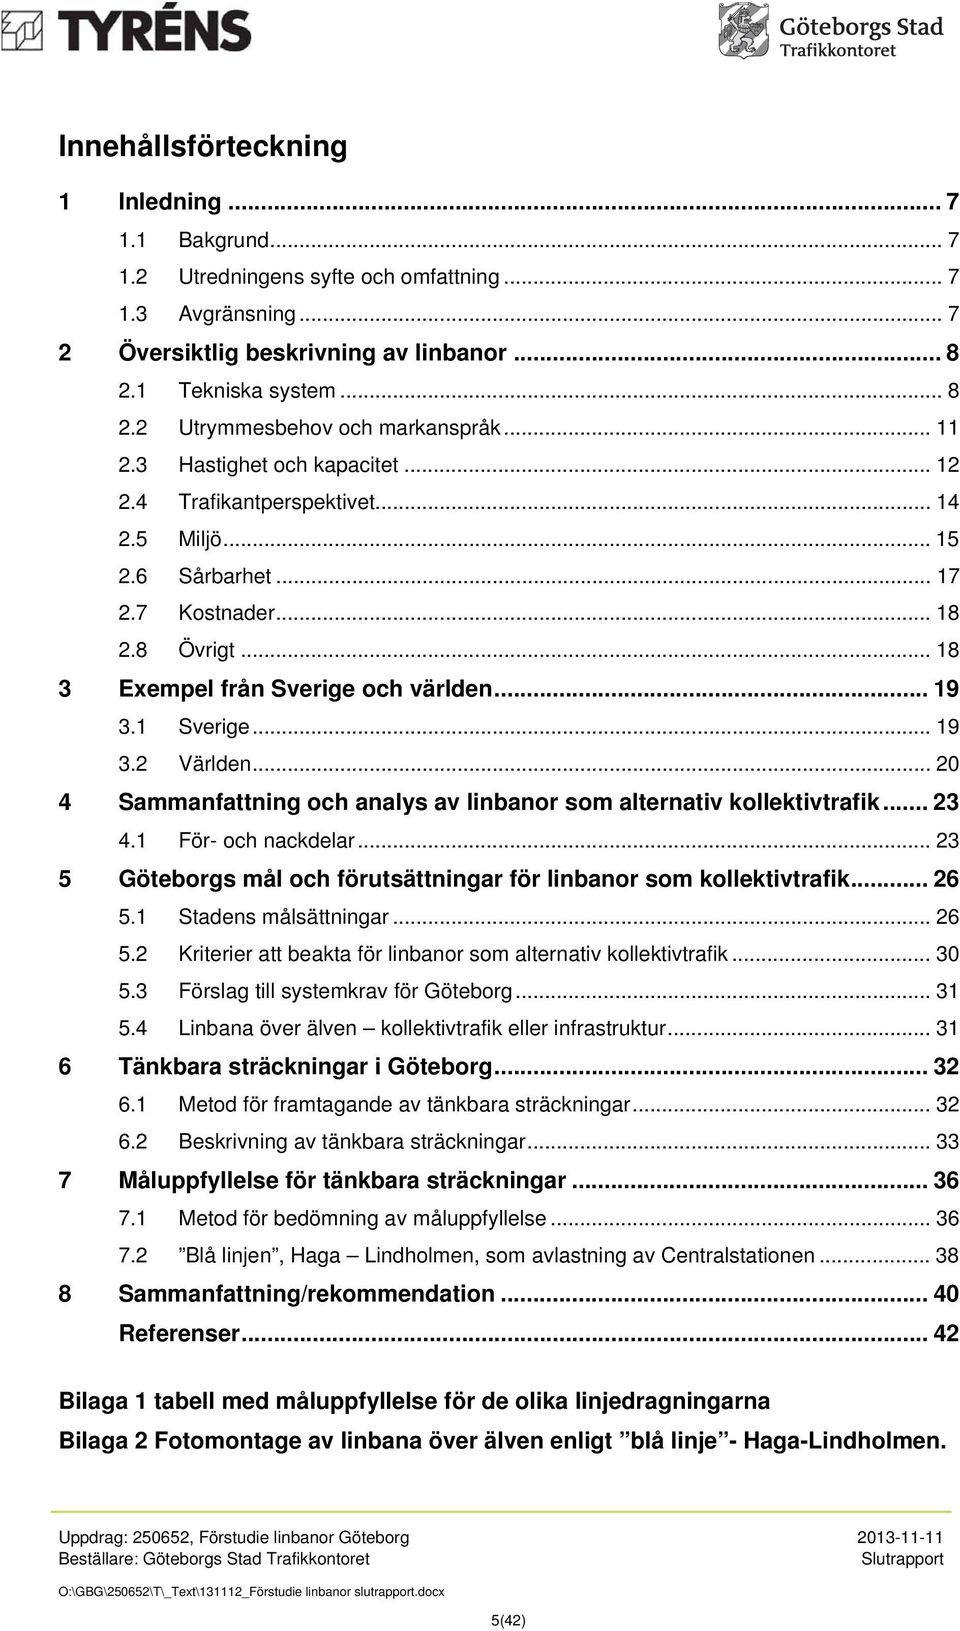 .. 19 3.2 Världen... 20 4 Sammanfattning och analys av linbanor som alternativ kollektivtrafik... 23 4.1 För- och nackdelar... 23 5 Göteborgs mål och förutsättningar för linbanor som kollektivtrafik.